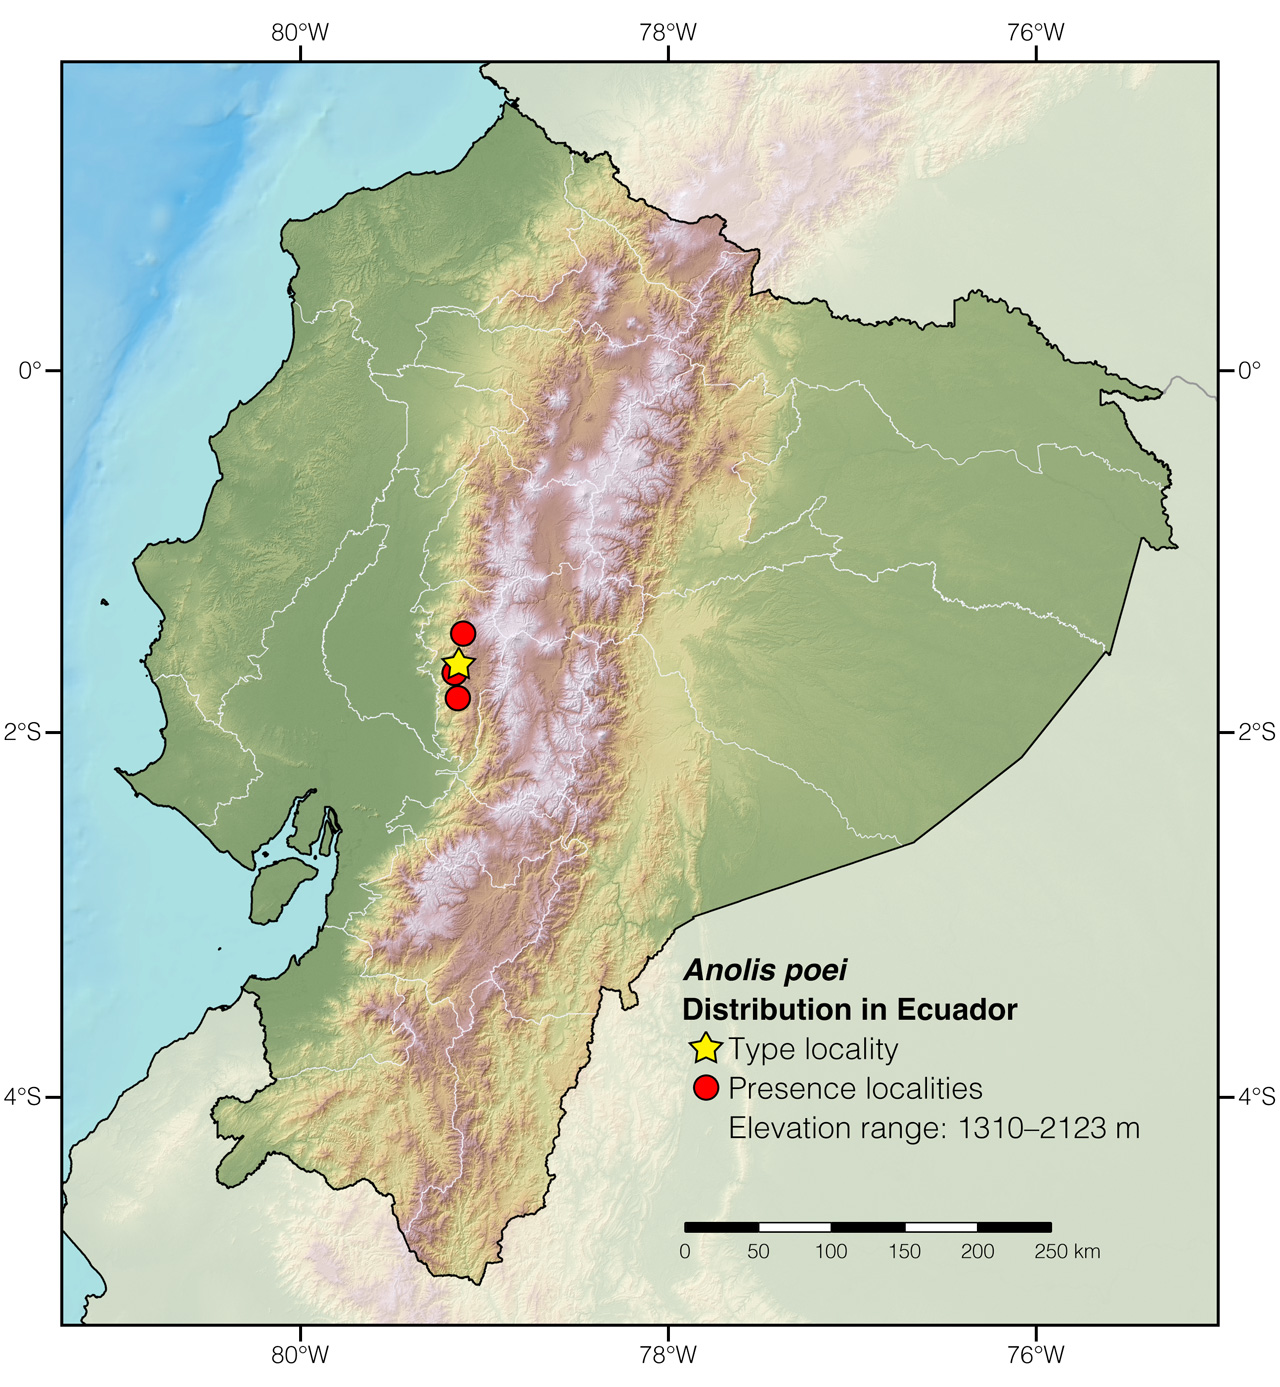 Distribution of Anolis poei in Ecuador